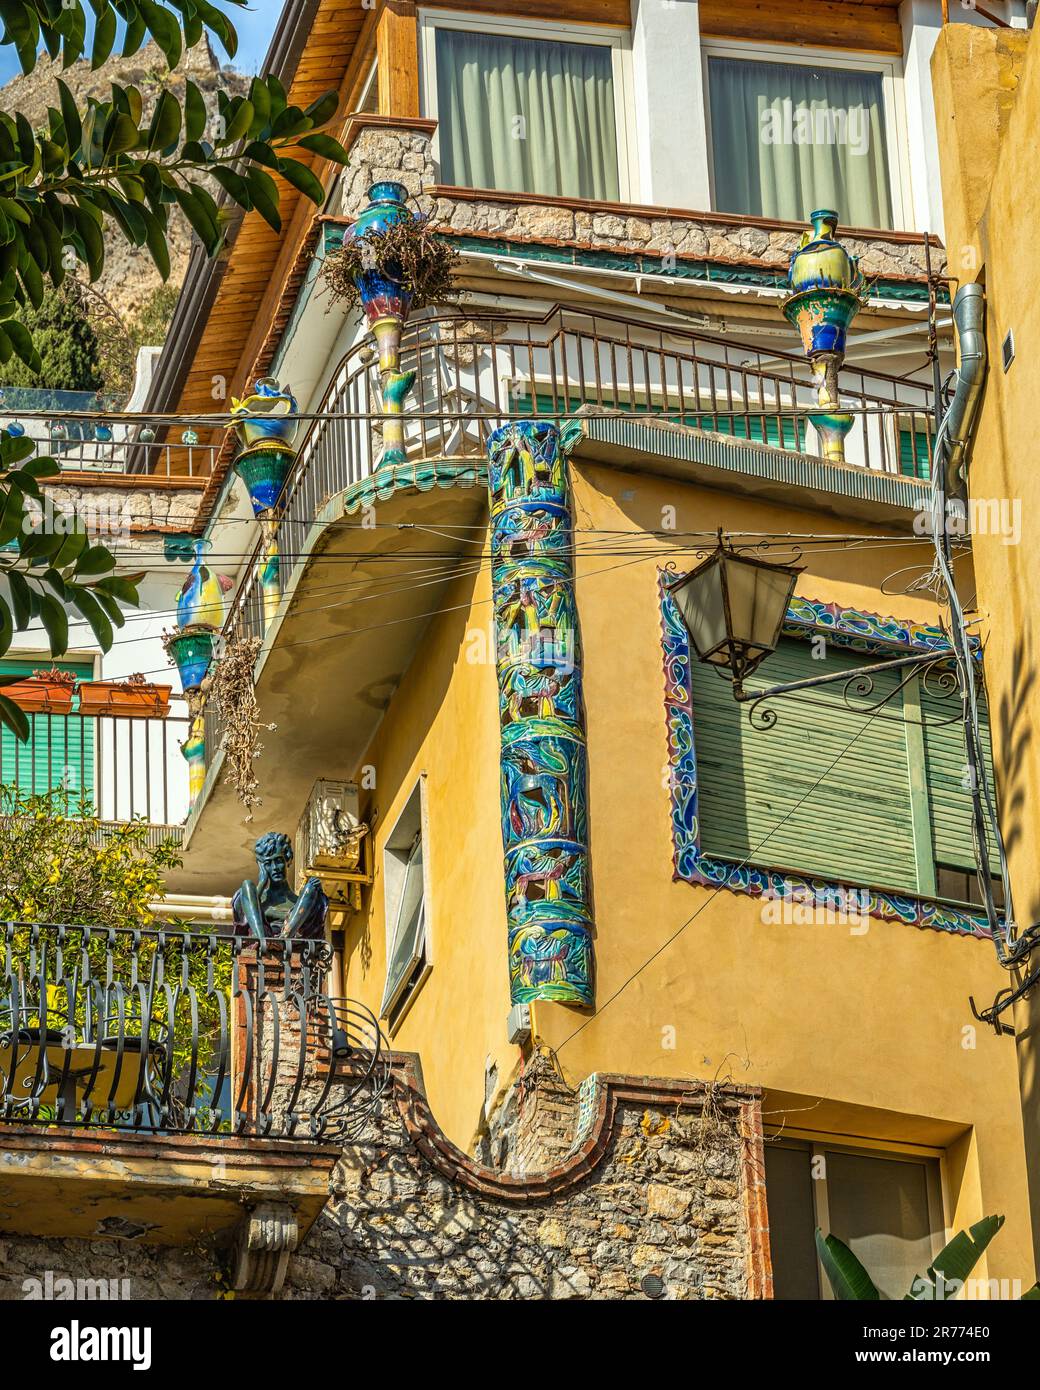 Palazzo della città turistica di Taormina con gli angoli e i balconi decorati con le tipiche maioliche della città. Taormina, Sicilia Foto Stock